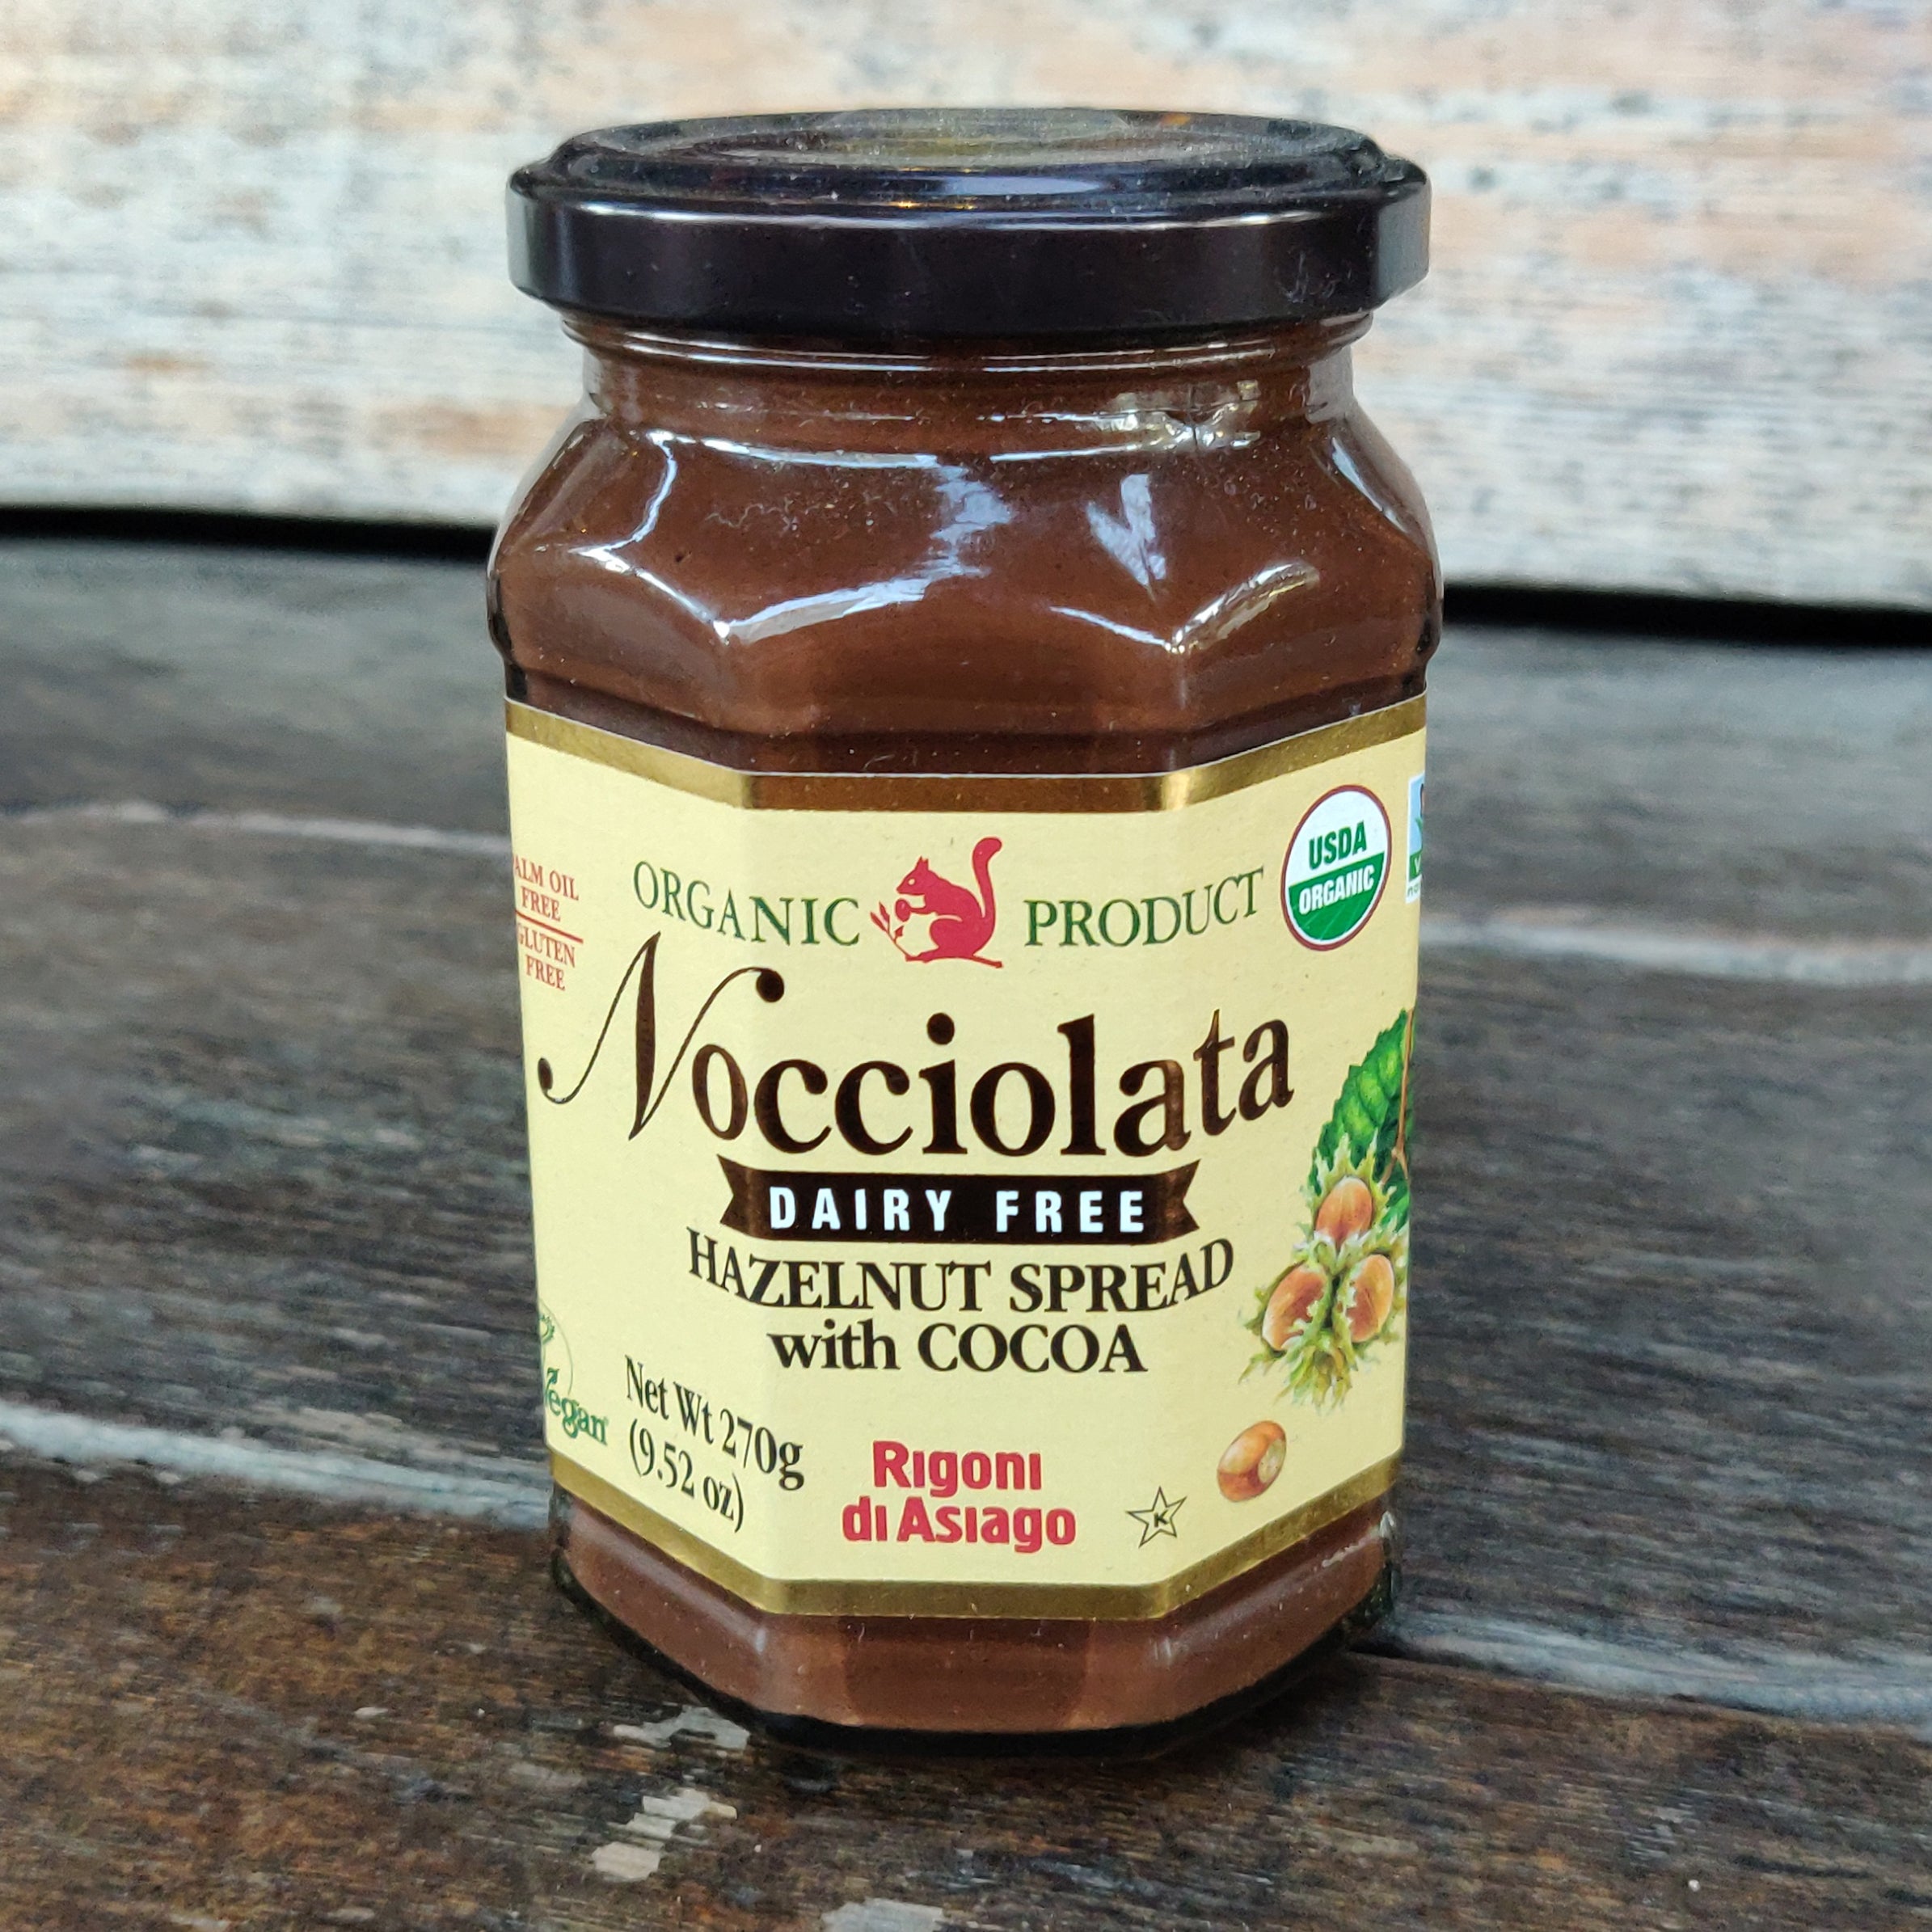 Rigoni Di Asiago Nocciolata DAIRY FREE Organic Hazelnut & Cocoa